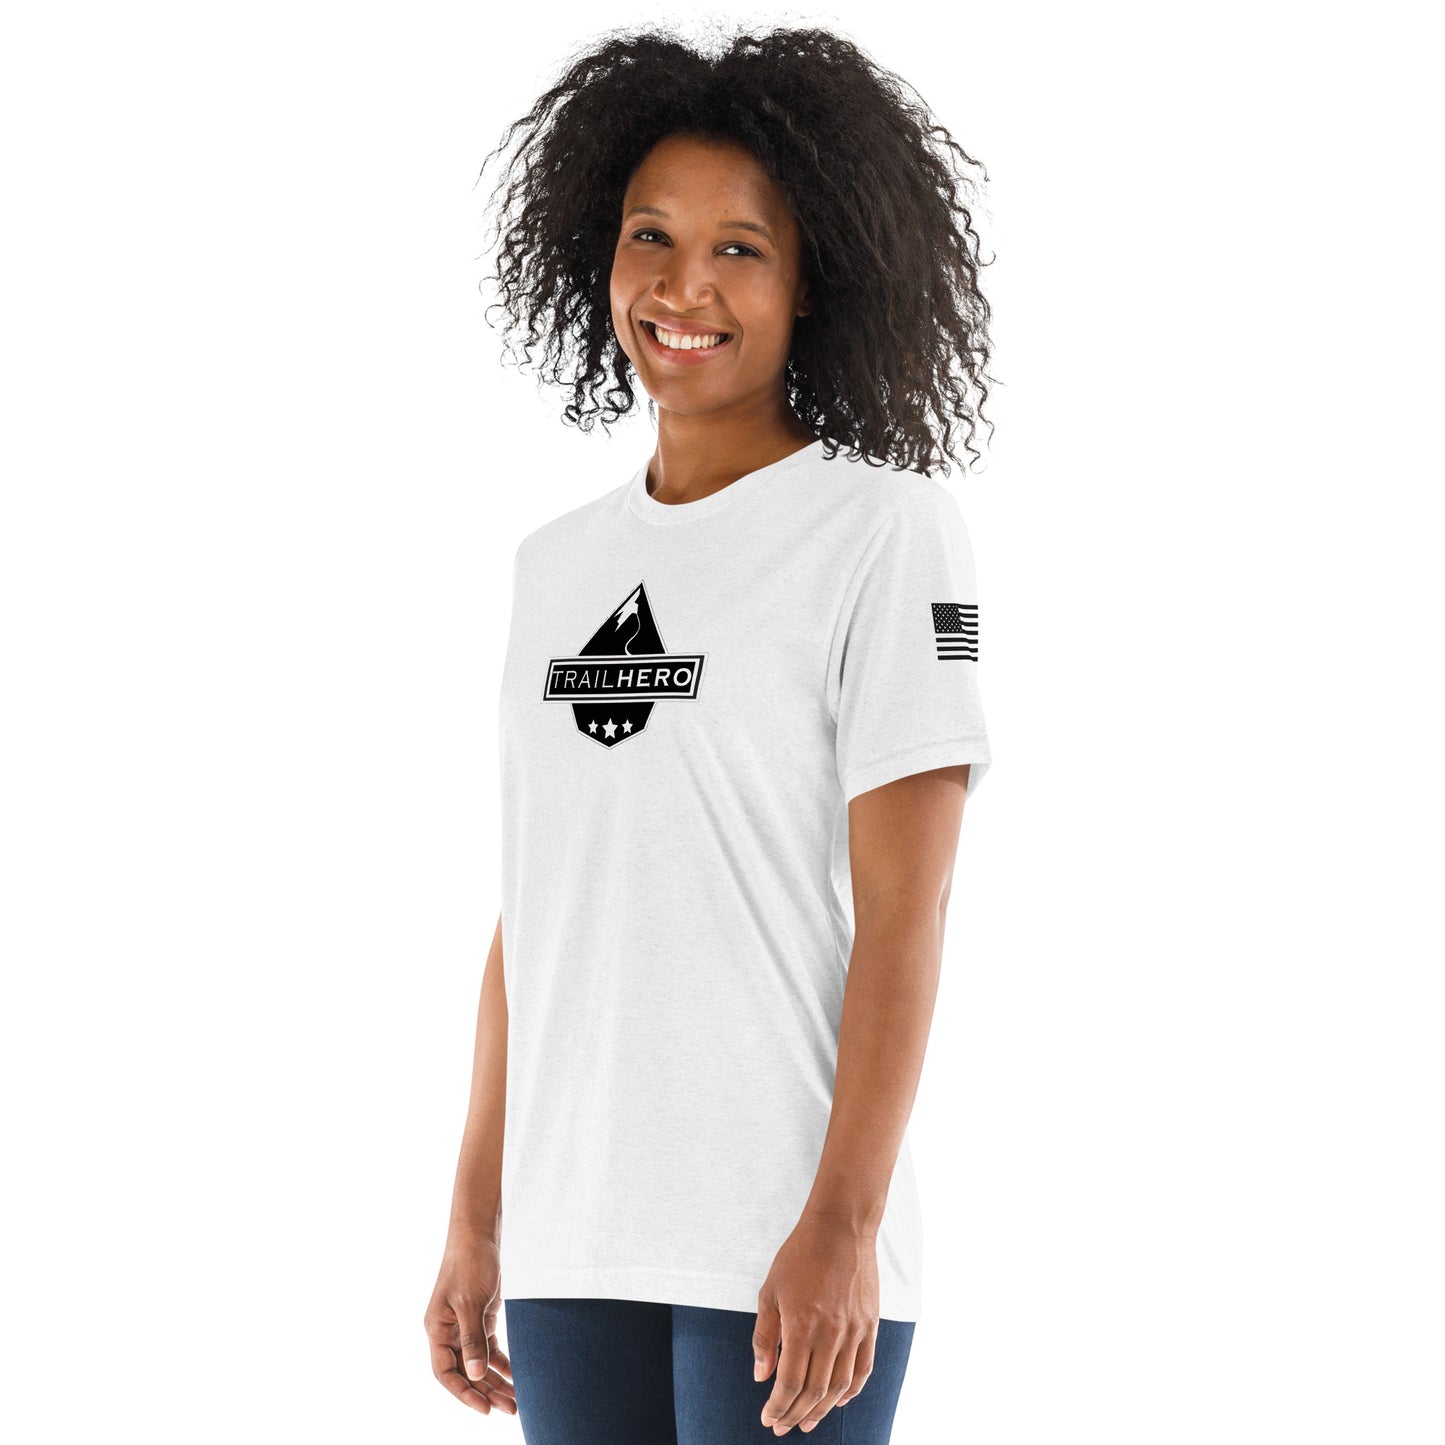 Trail Hero - Womens - Bella Canvas - Pre-Shrunk Tri-Blend - Short Sleeve T-shirt